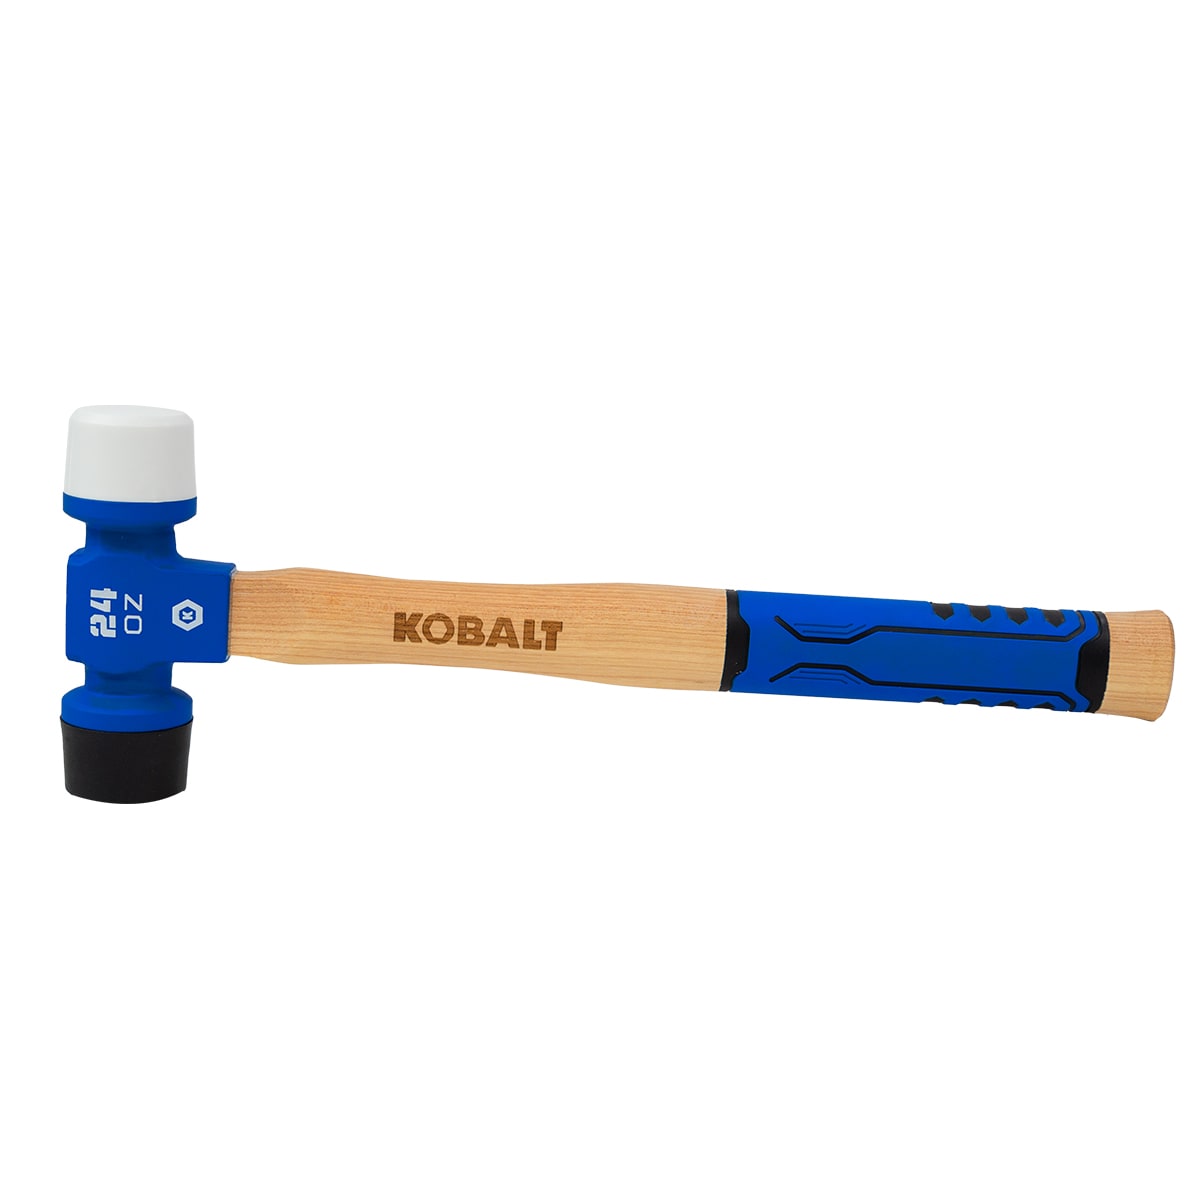 Kobalt 32-oz Smooth Face Rubber Head Fiberglass Rubber Mallet | KB-T081932